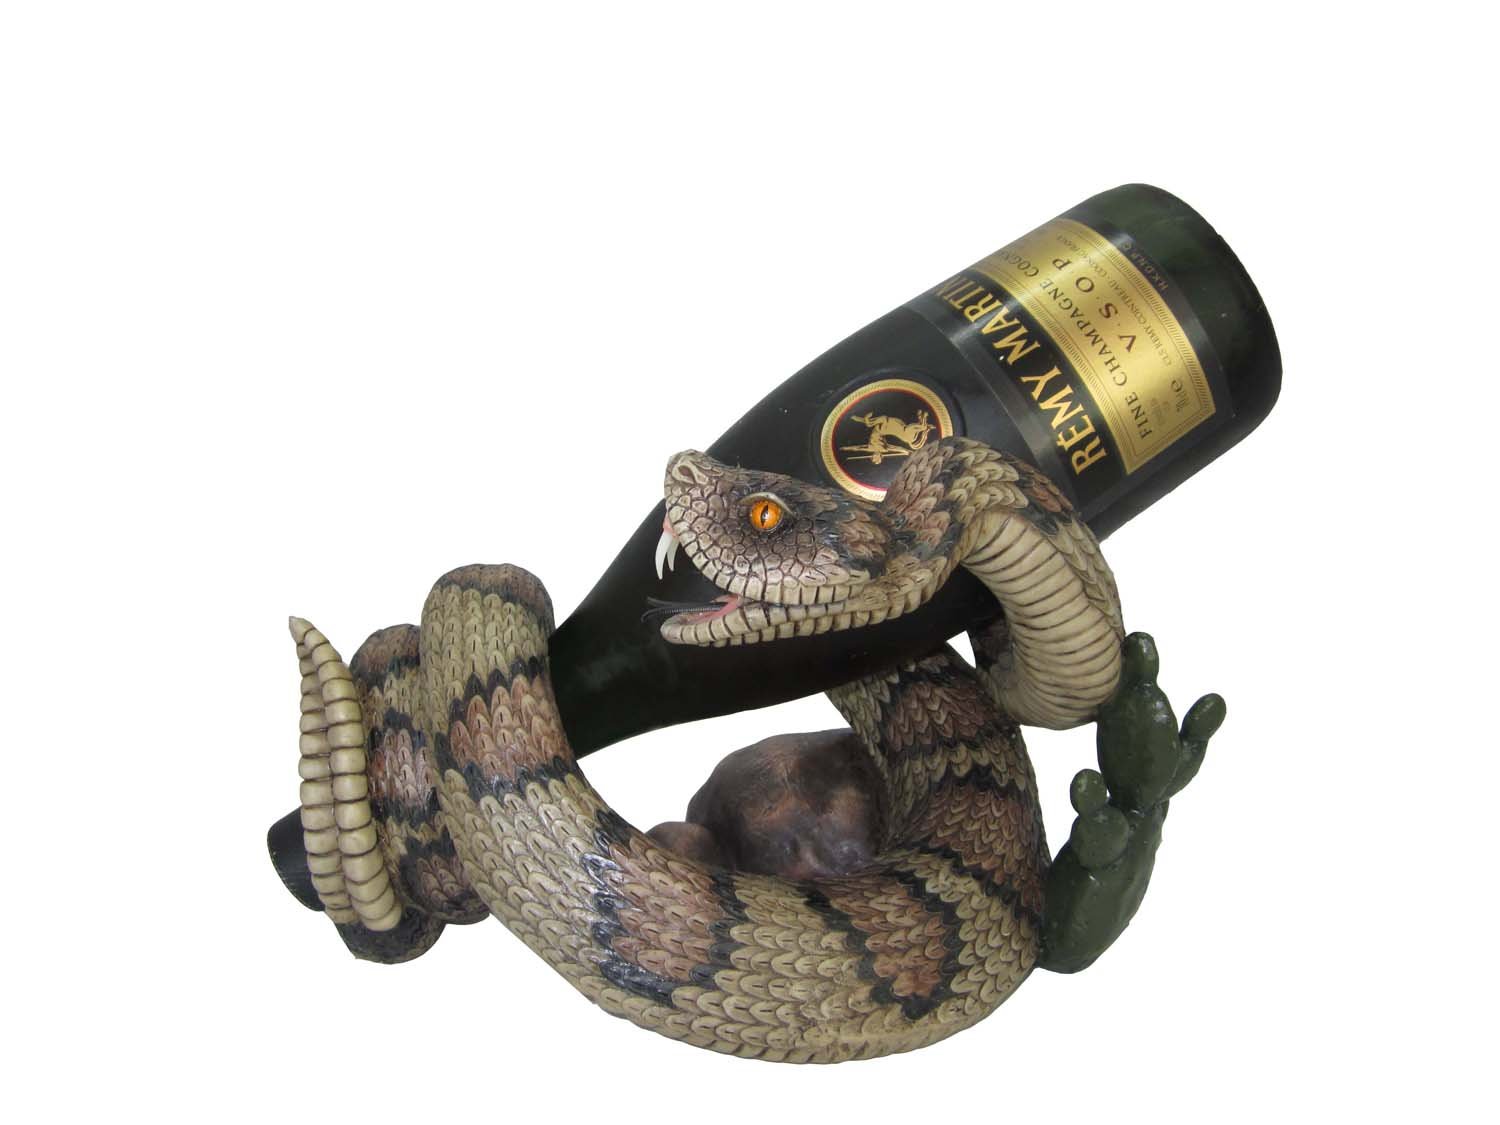 Rattlesnake wine bottle holder. 